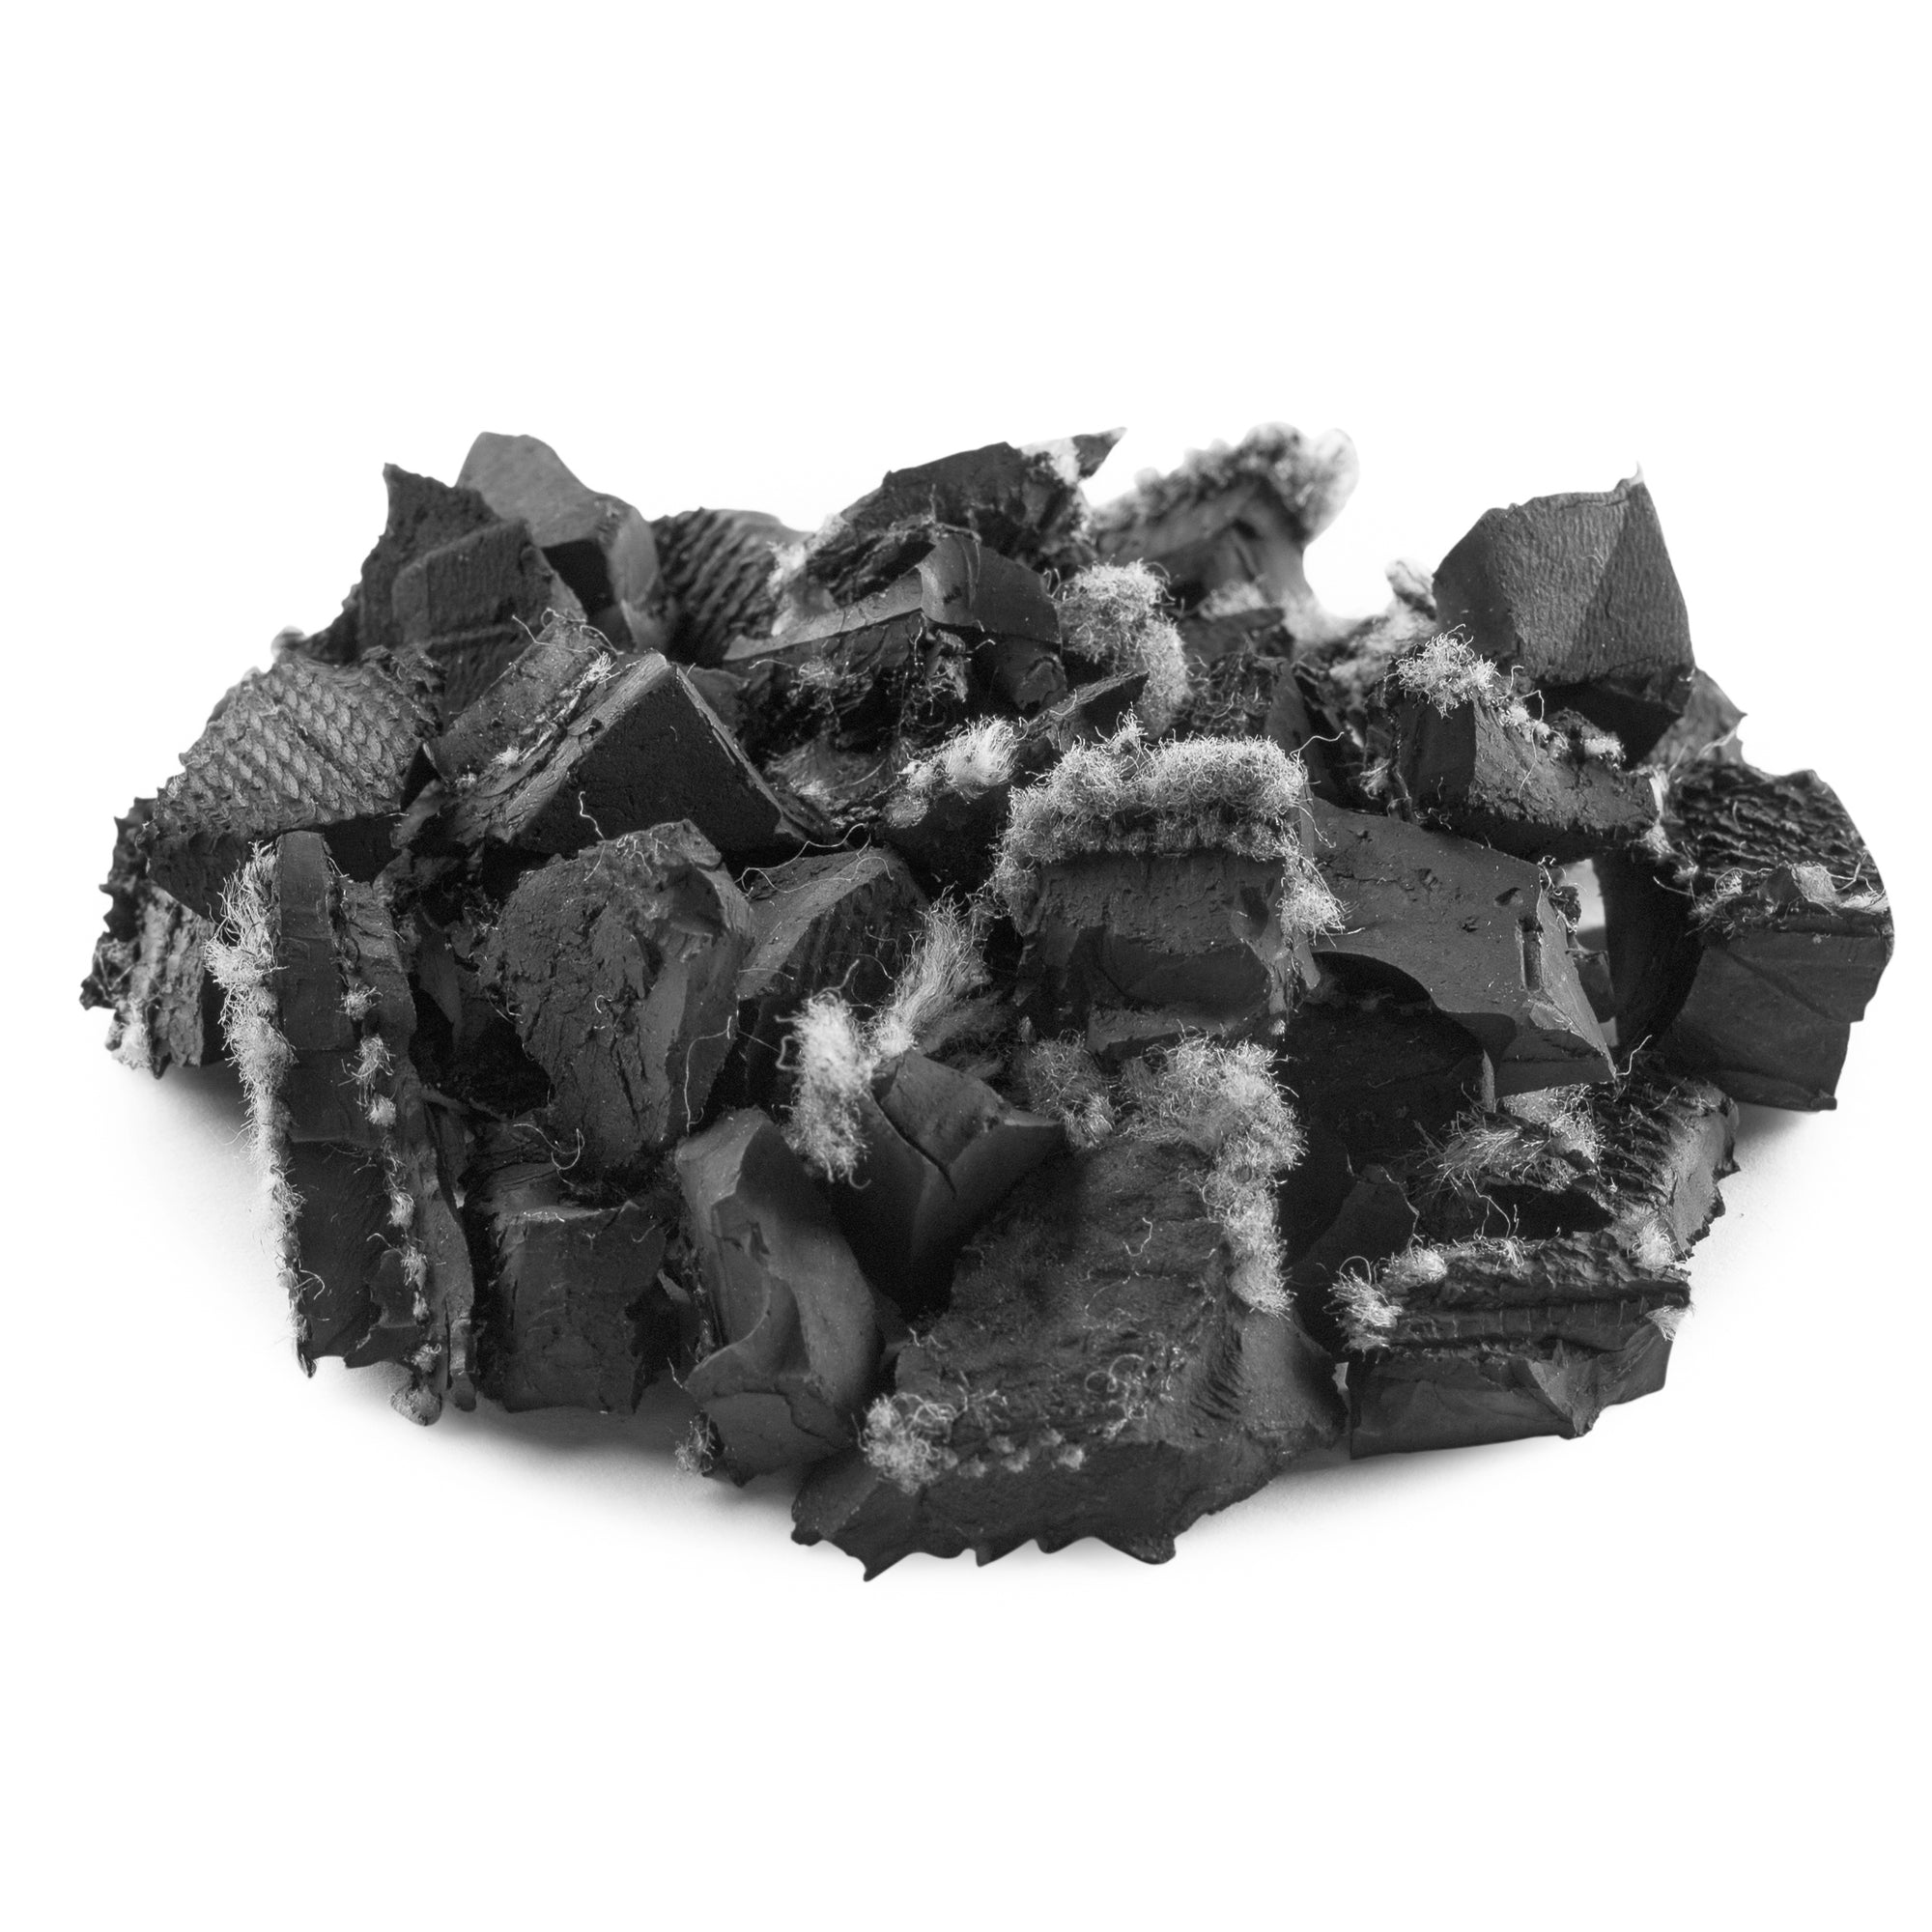 Landscape Rubber Mulch | Unpainted Black